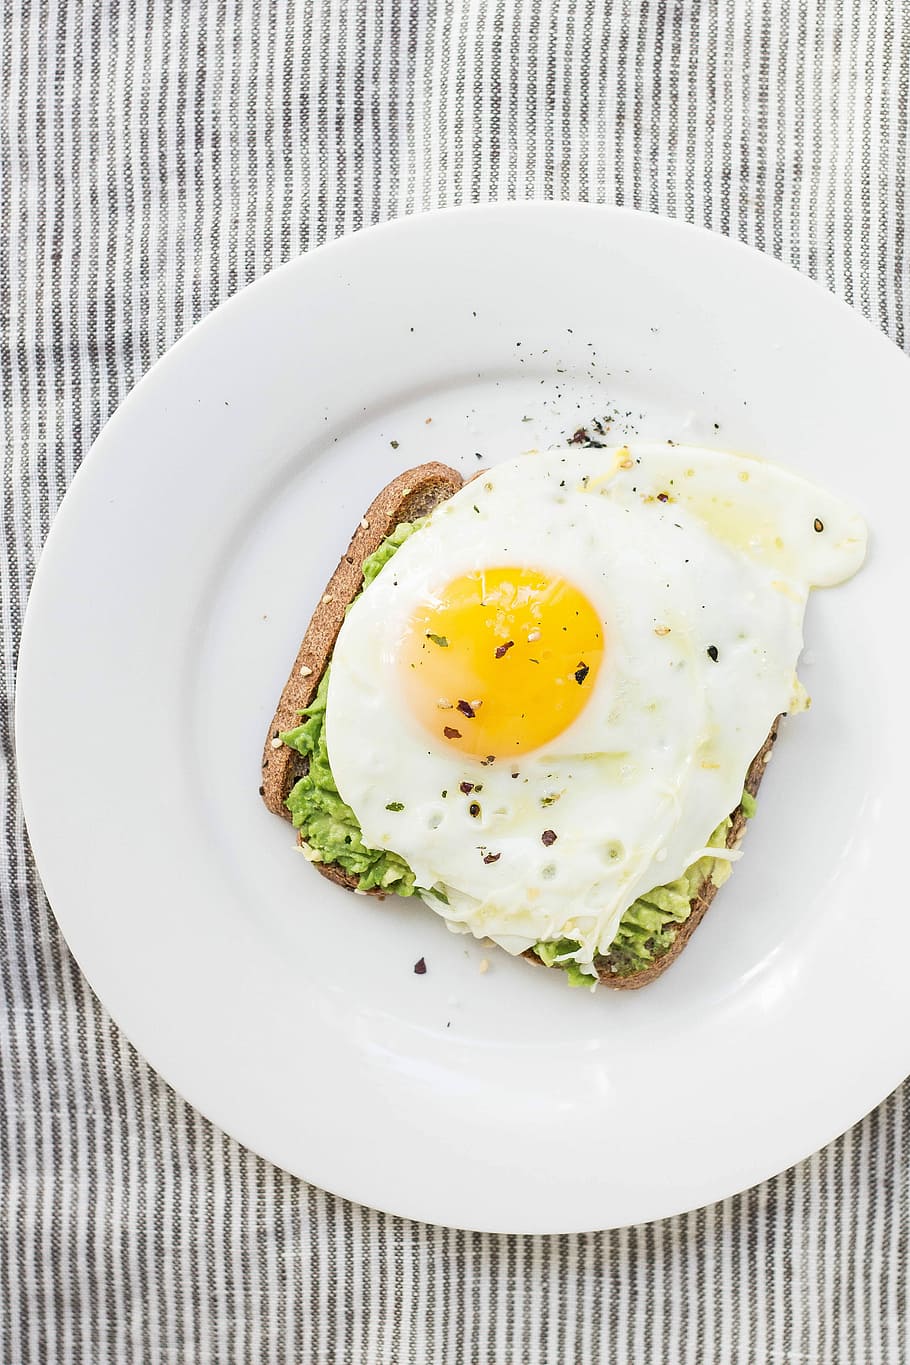 sunny side up egg, lettuce, bread on white ceramic plate, sunny-side egg on bread